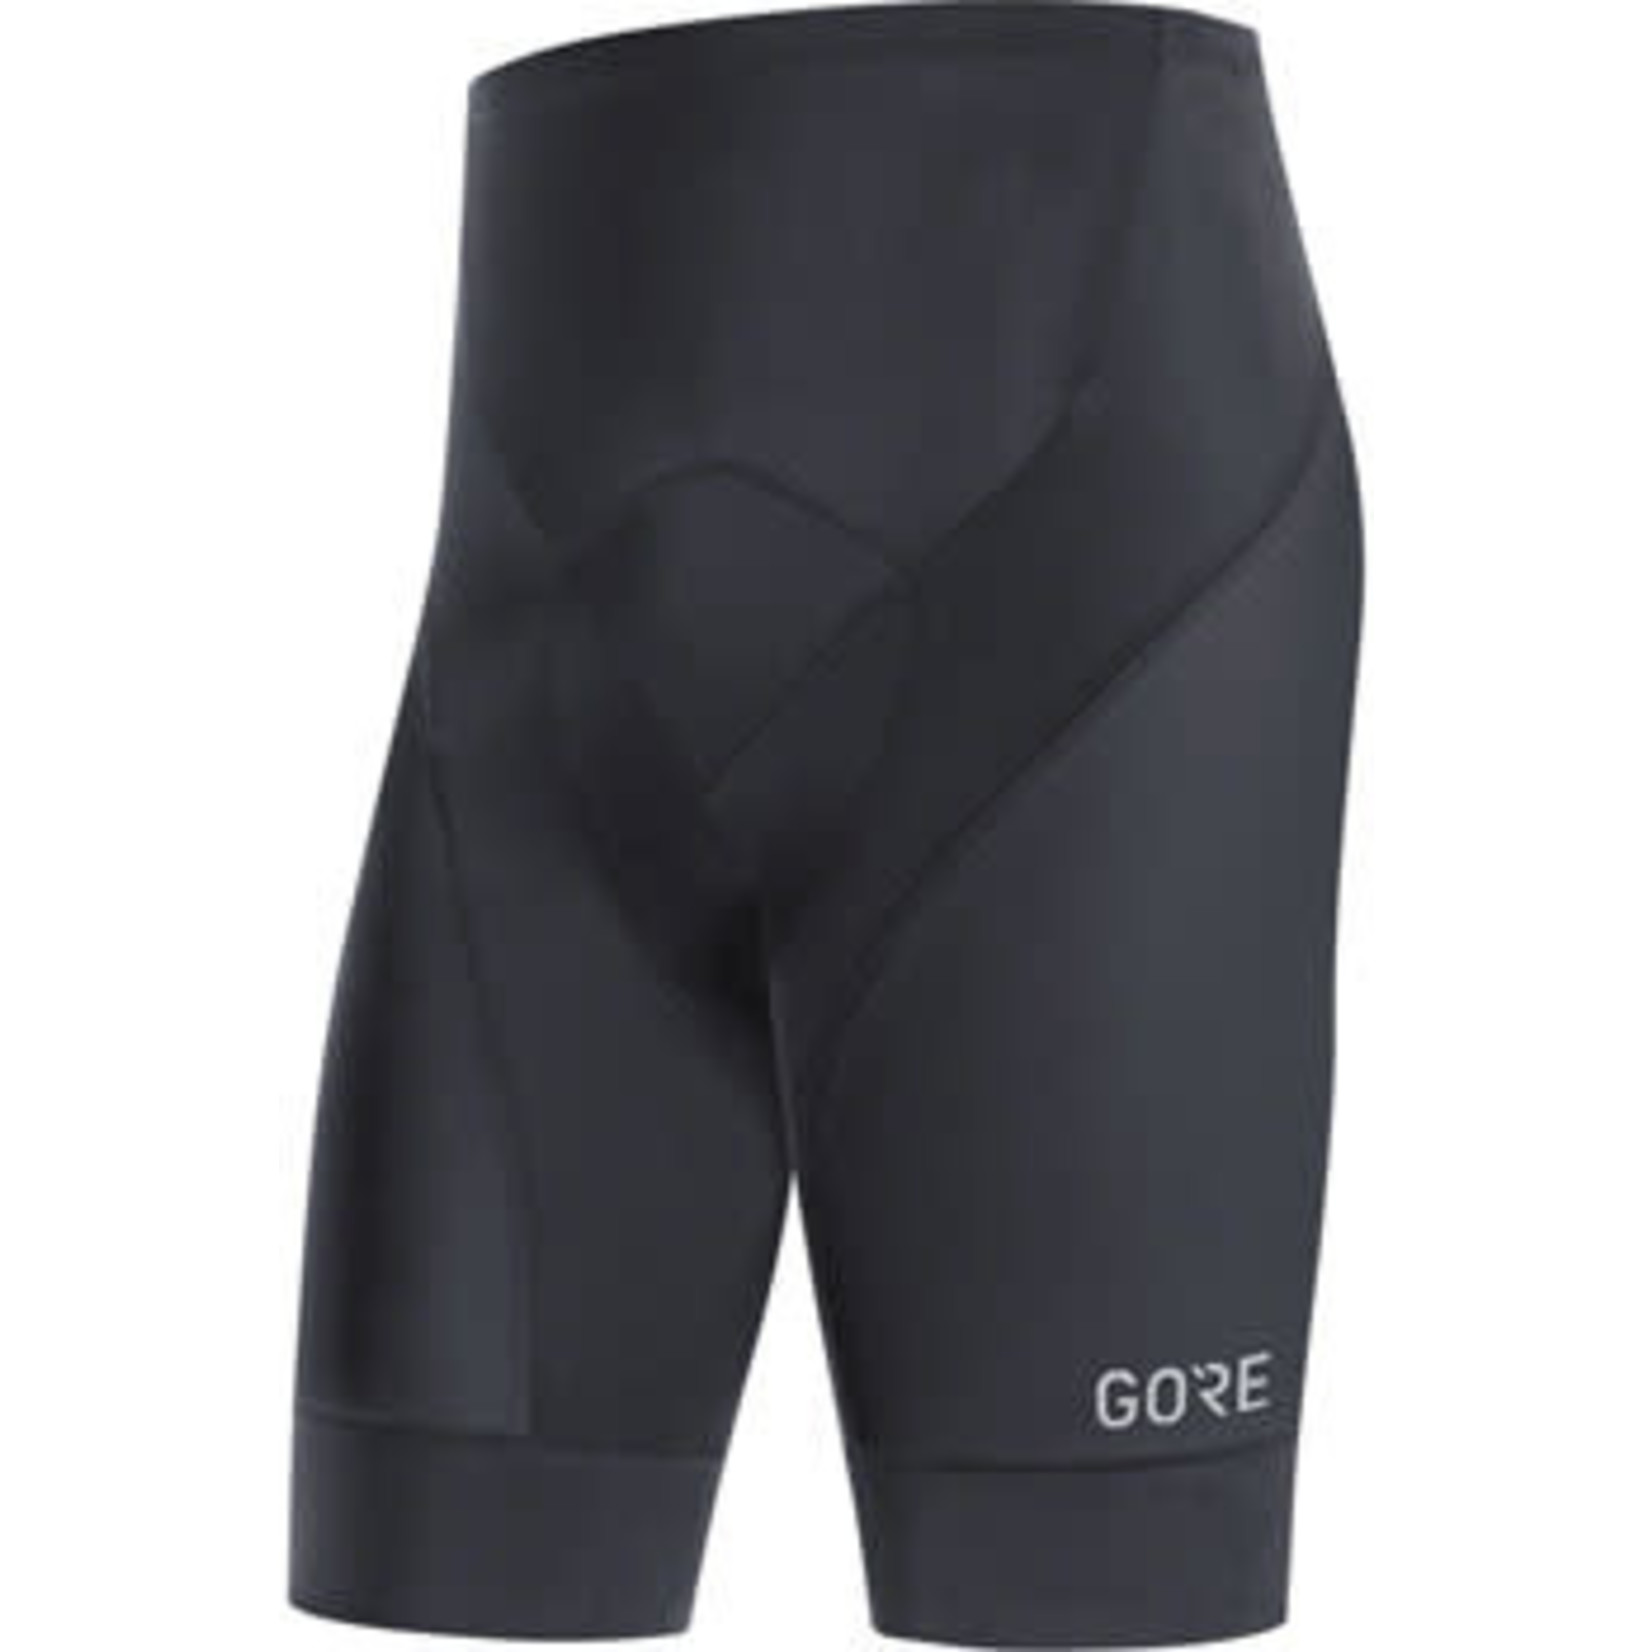 GORE GORE C3 Short Tights + - Black, Medium, Men's